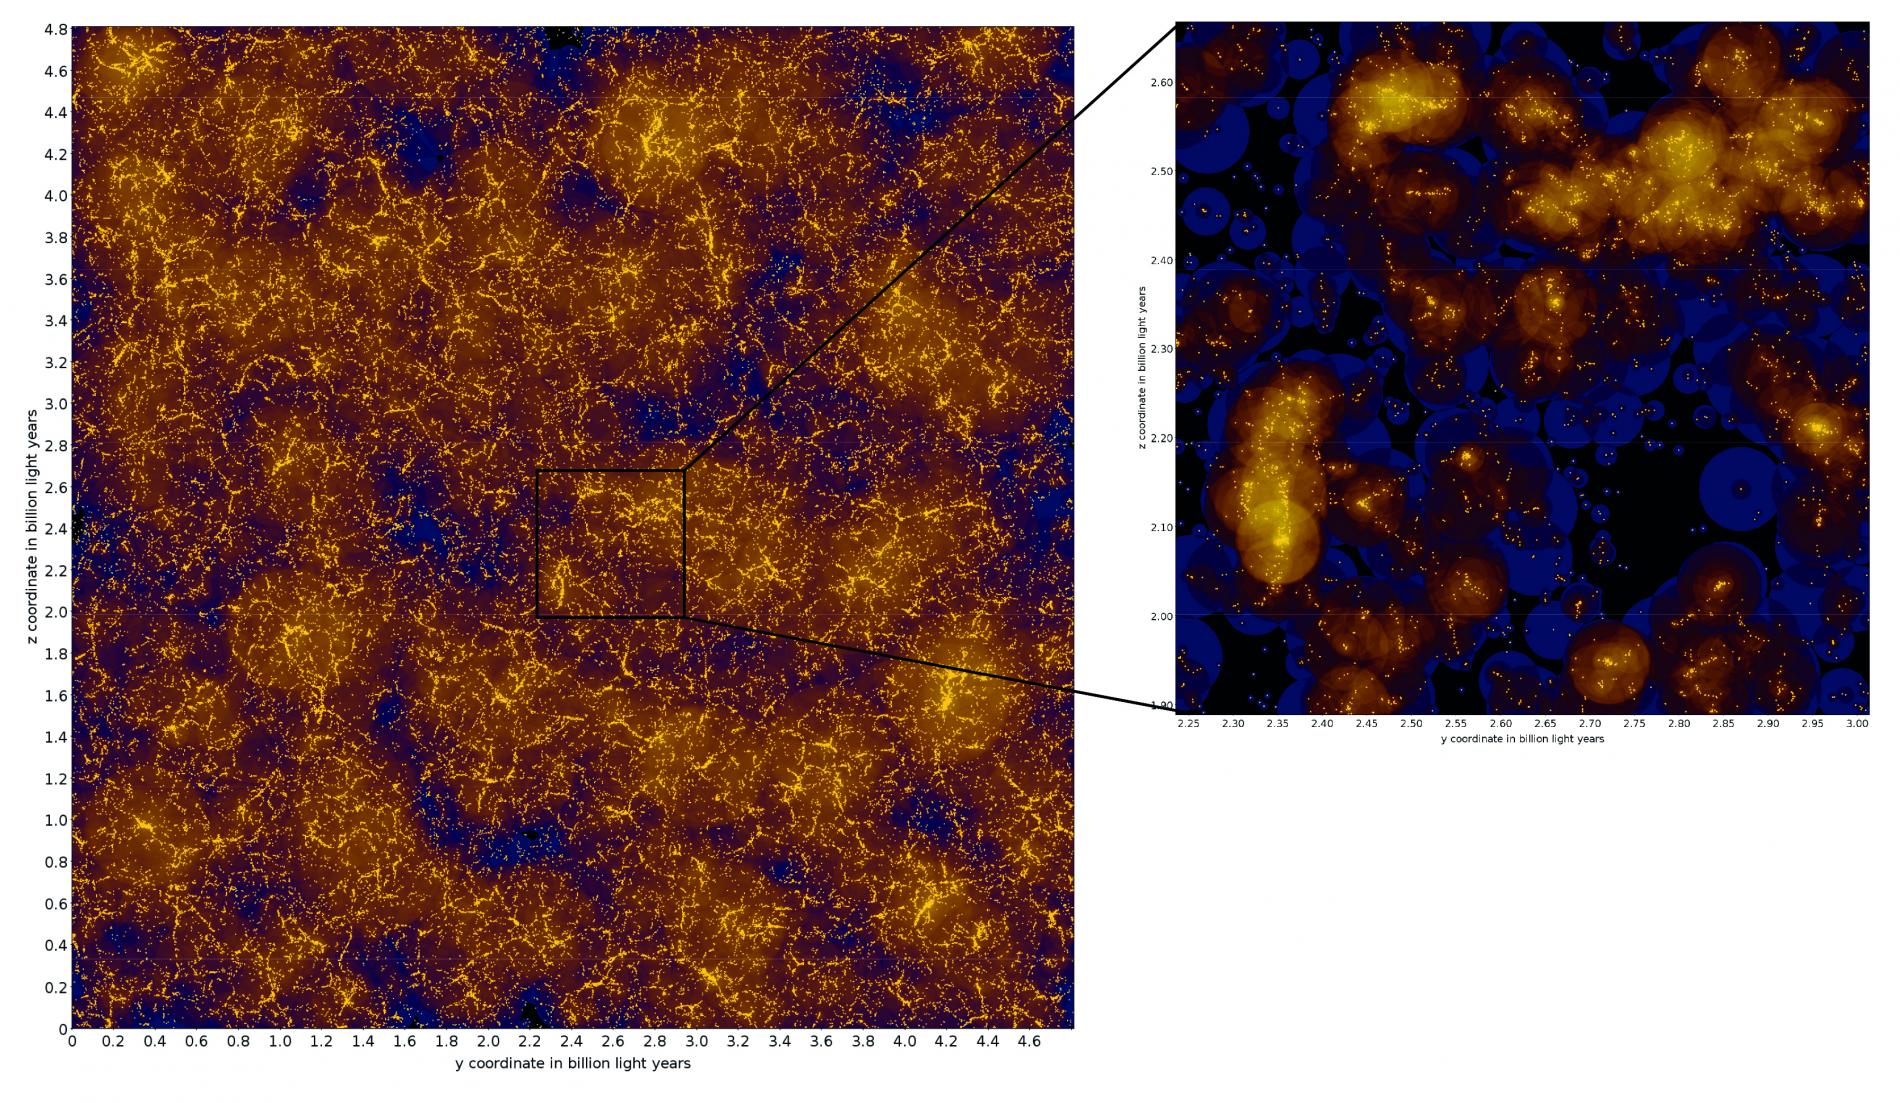 Visualización de las galaxias en el universo virtual. La imagen de la izquierda muestra una porción de  4.7 millones de años luz de la simulación, que tiene una longitud total de 4.8 mil millones de años luz. Cada galaxia se muestra como un punto amarillo y el fondo indica la materia oscura que la rodea. La imagen de la derecha muestra ampliada una región más pequeña. Los halos de materia oscura que alojan a las galaxias son visibles como círculos, cuyos códigos de color corresponden a la densidad prevista y cuyos tamaños son proporcionales a su masa. Fuente: K. Kiebe, AIP.